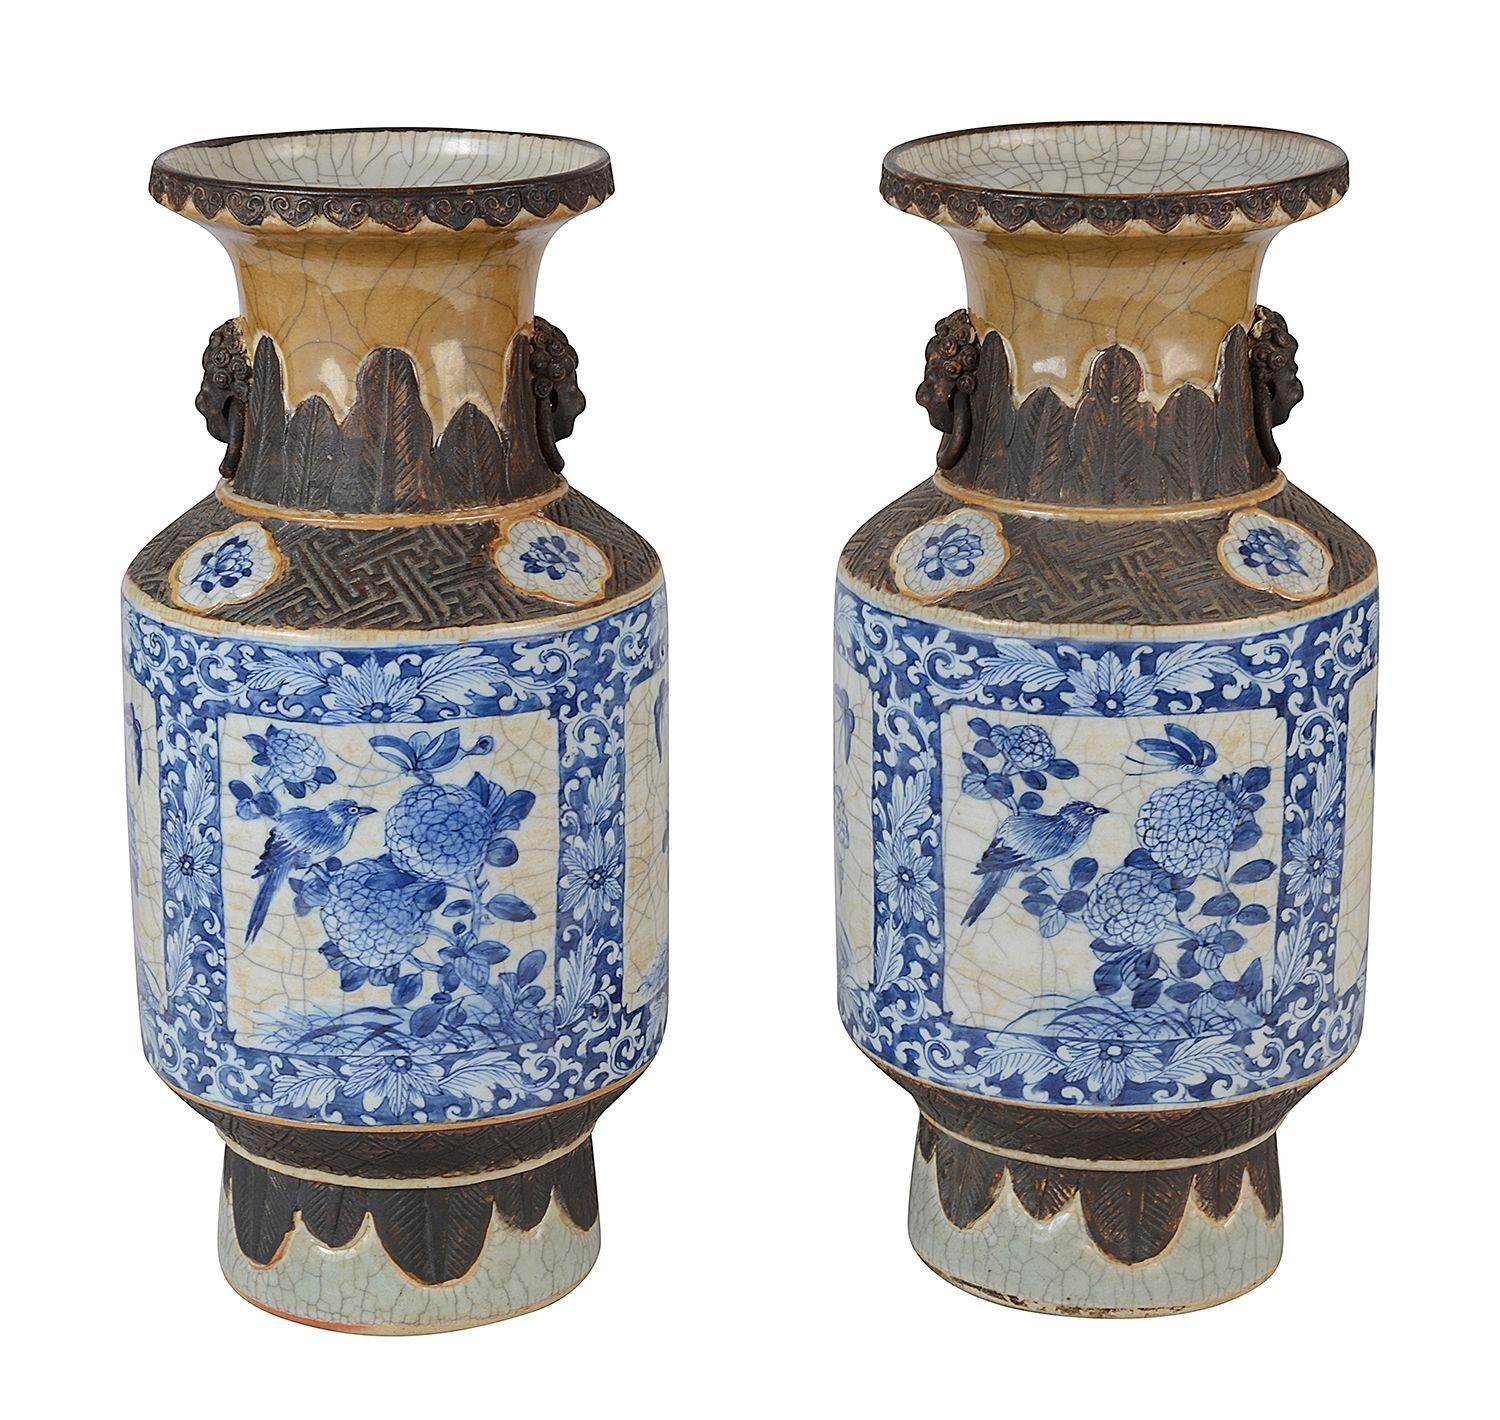 Paire de vases/lampes en faïence bleue et blanche d'exportation chinoise de la fin du XIXe siècle, de bonne qualité.
Chacune est ornée de montures en faux bronze au-dessus et au-dessous des scènes centrales peintes à la main en bleu et blanc